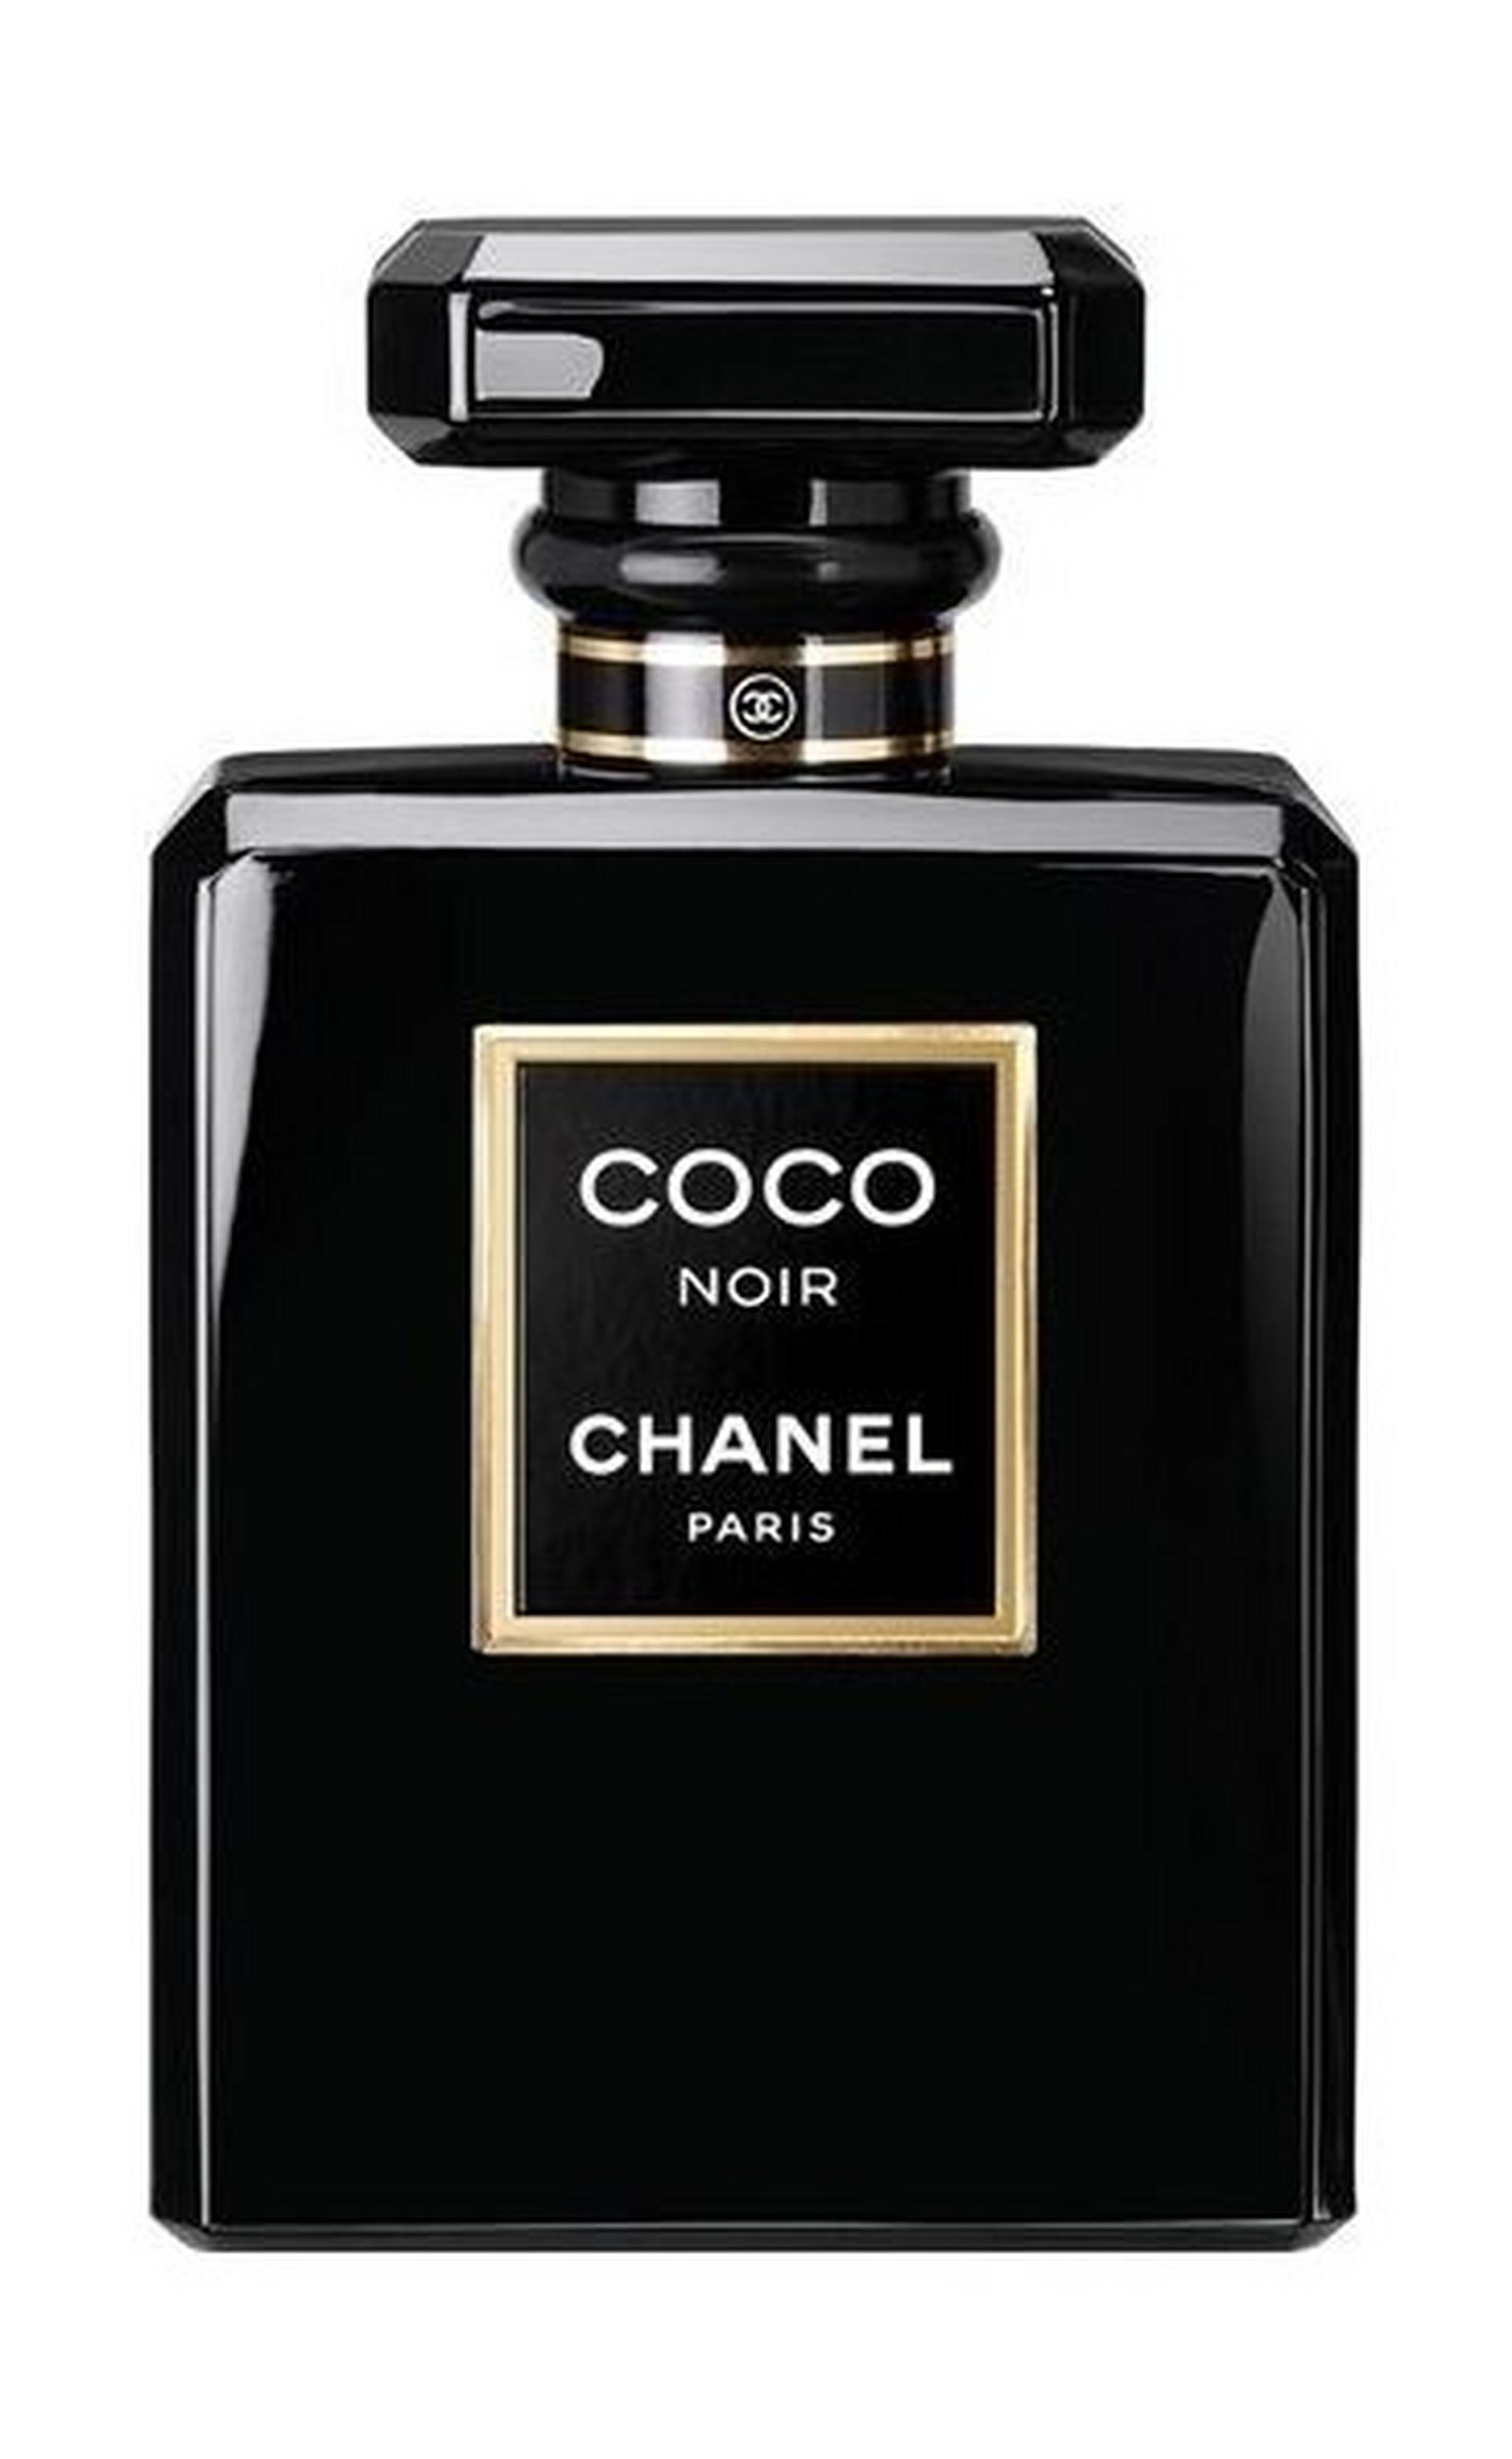 Coco Noir by Chanel for Women 50 ml Eau de Parfum